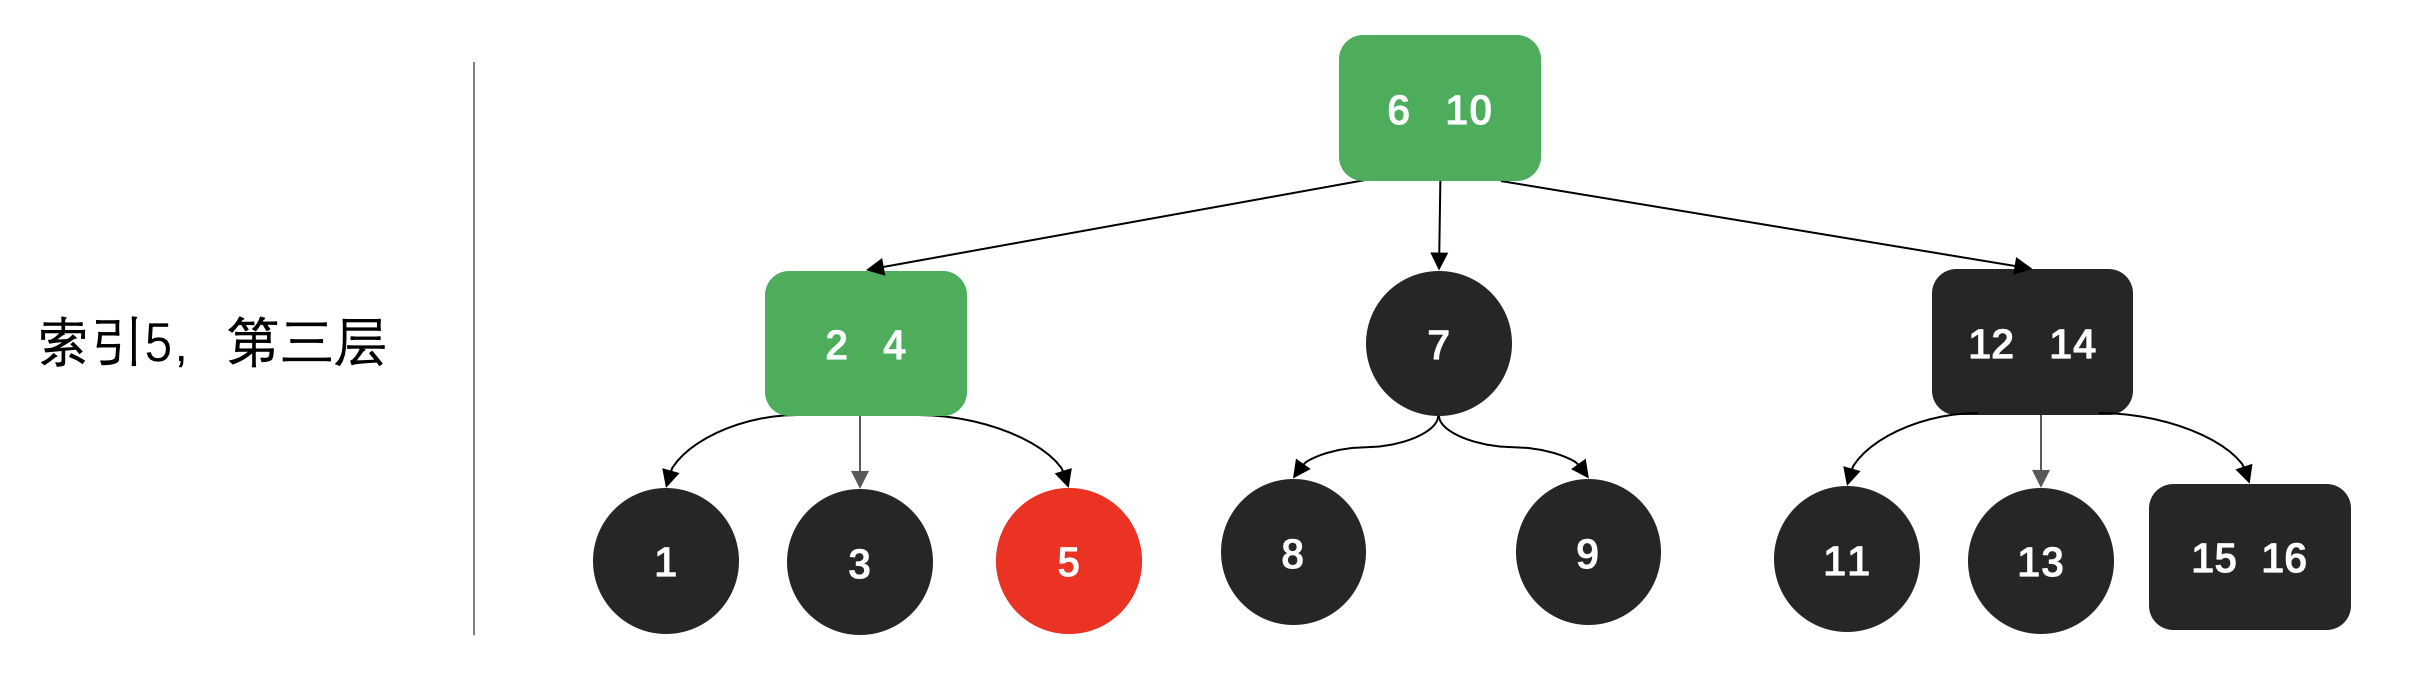 2-3平衡树 (红黑树的前身) - 图13